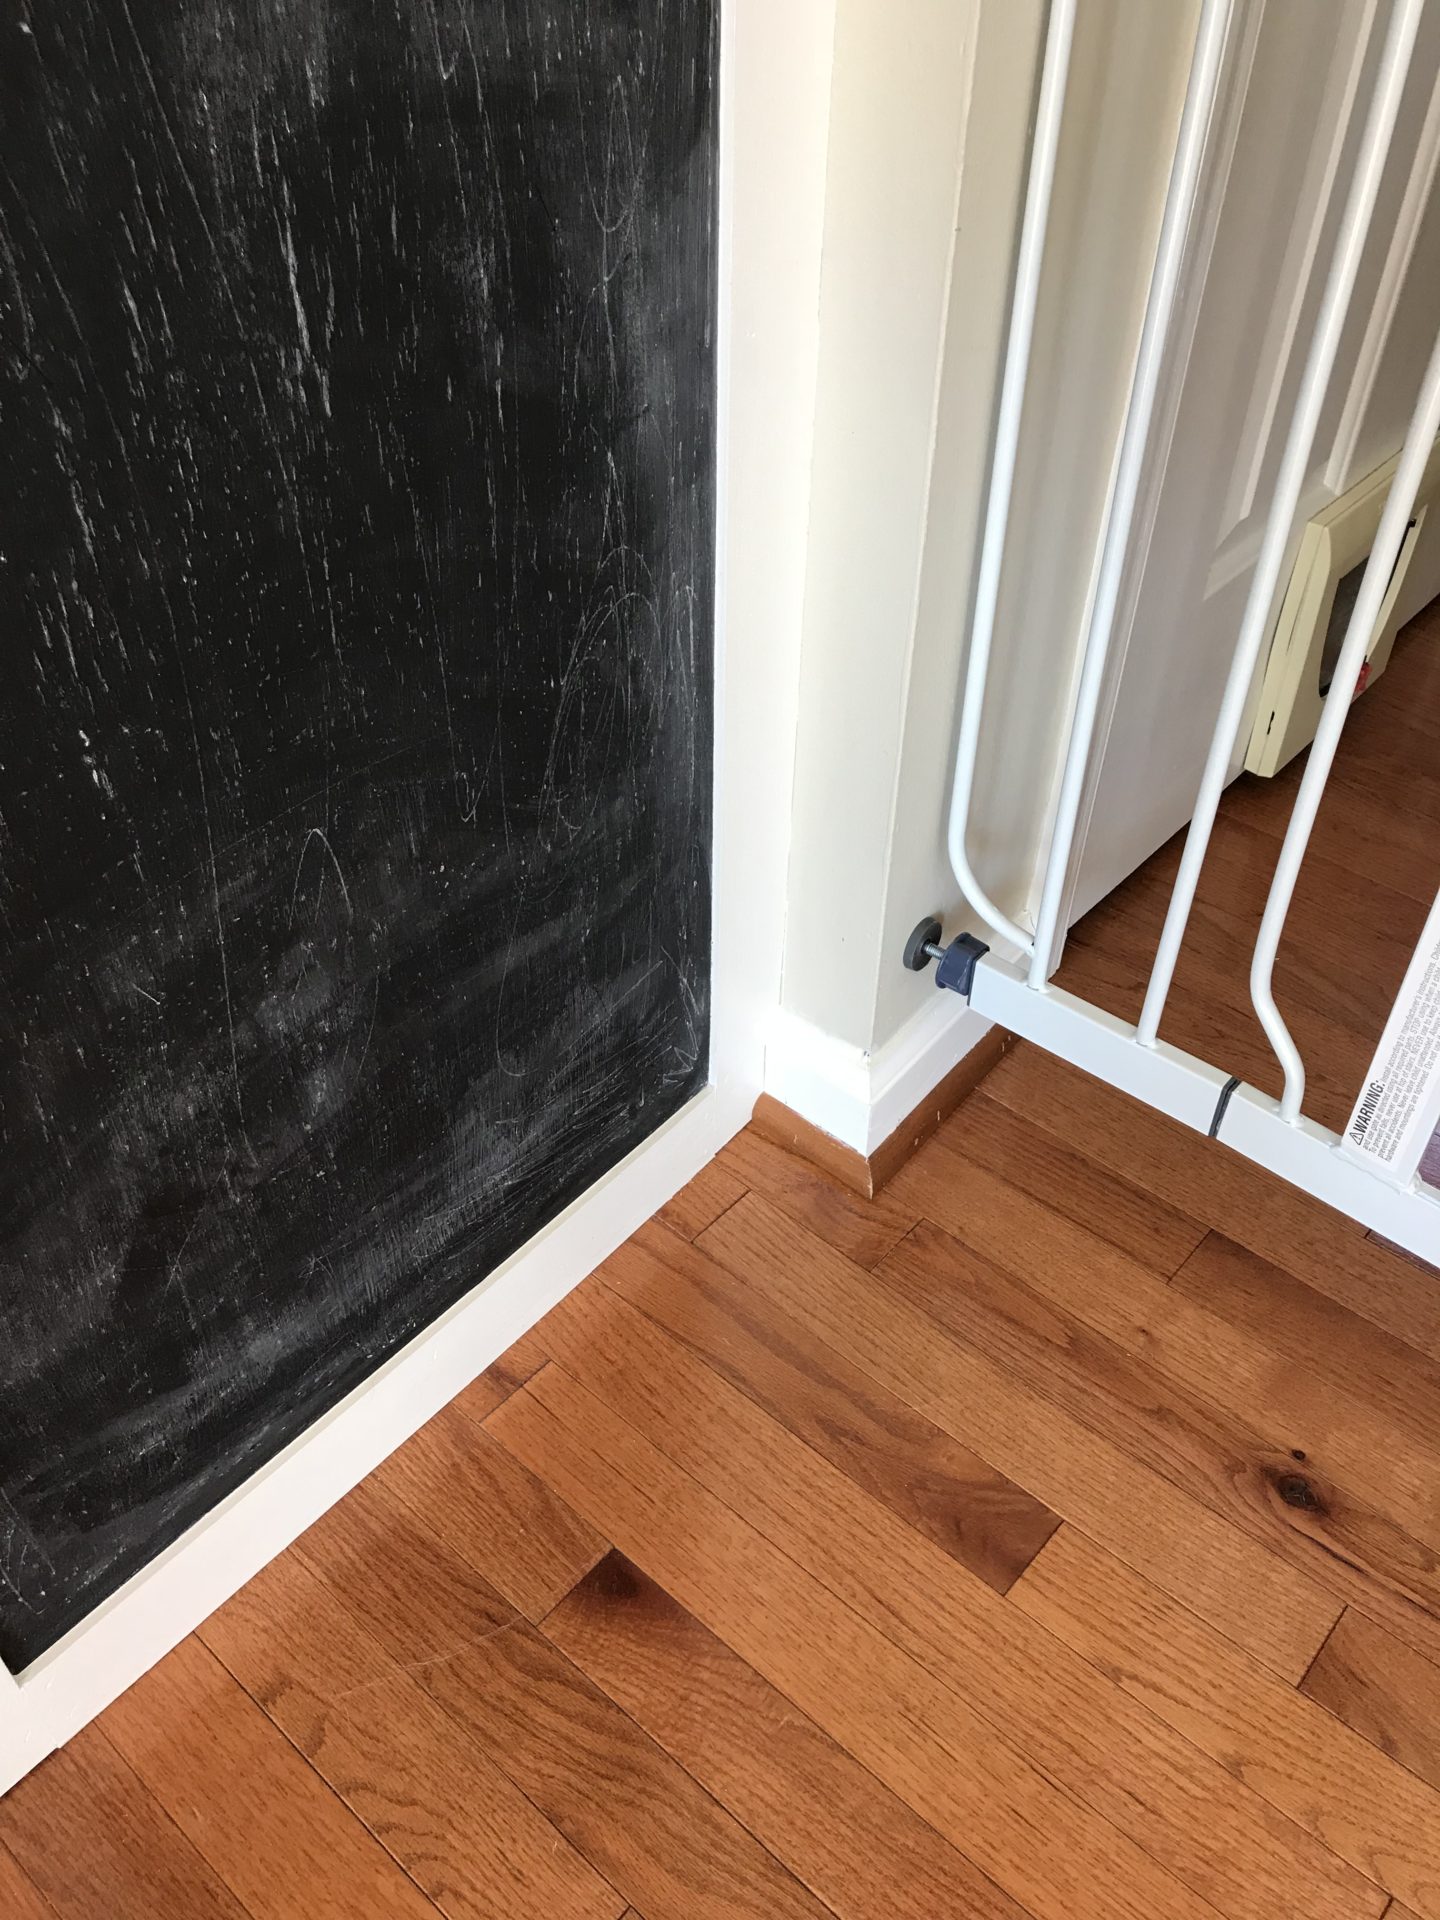 Kitchen Chalkboard